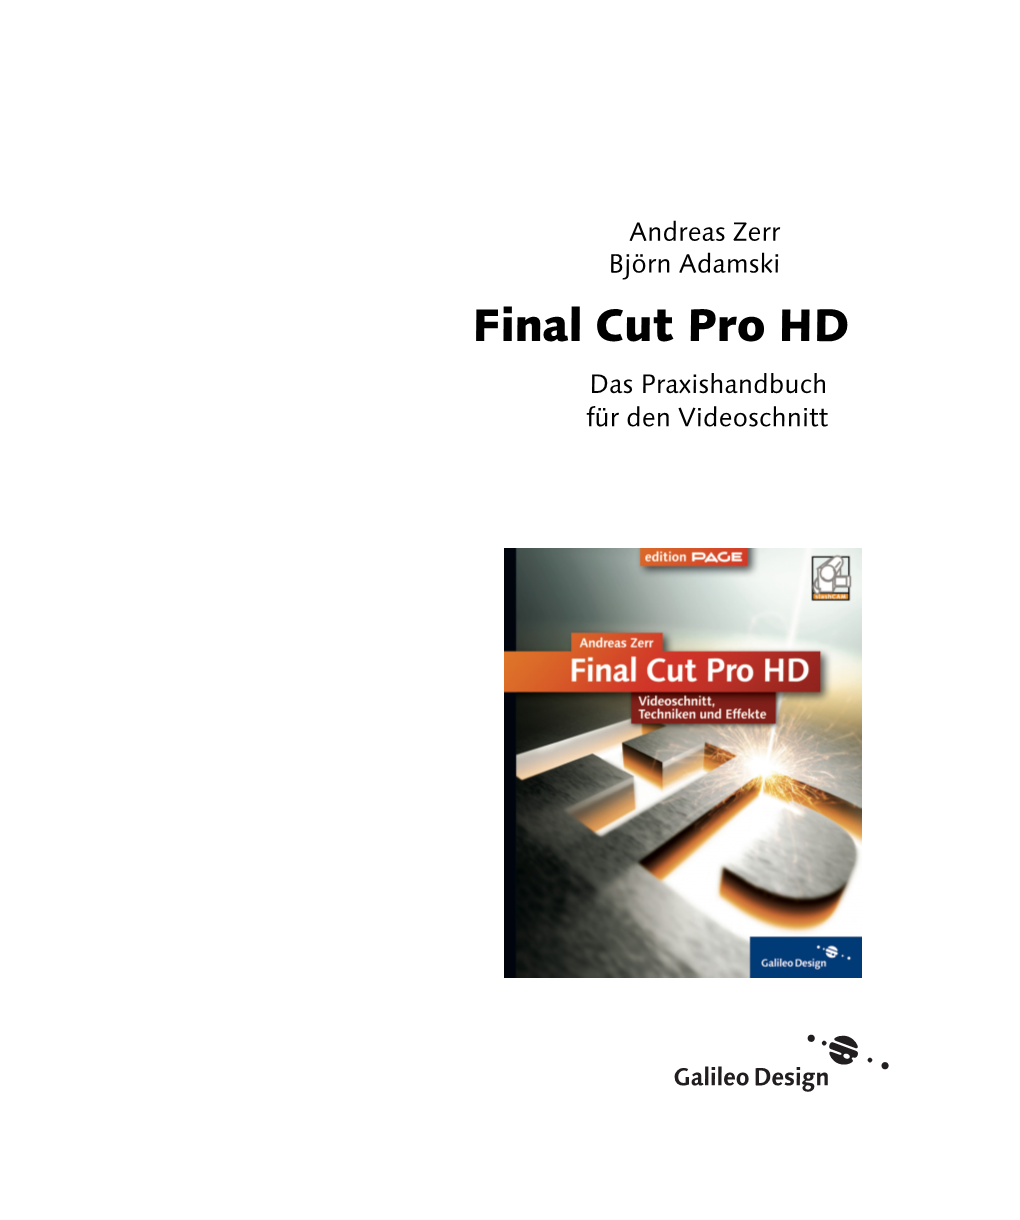 Final Cut Pro HD Das Praxishandbuch Für Den Videoschnitt Für Maria (1936 – 2004) Inhalt